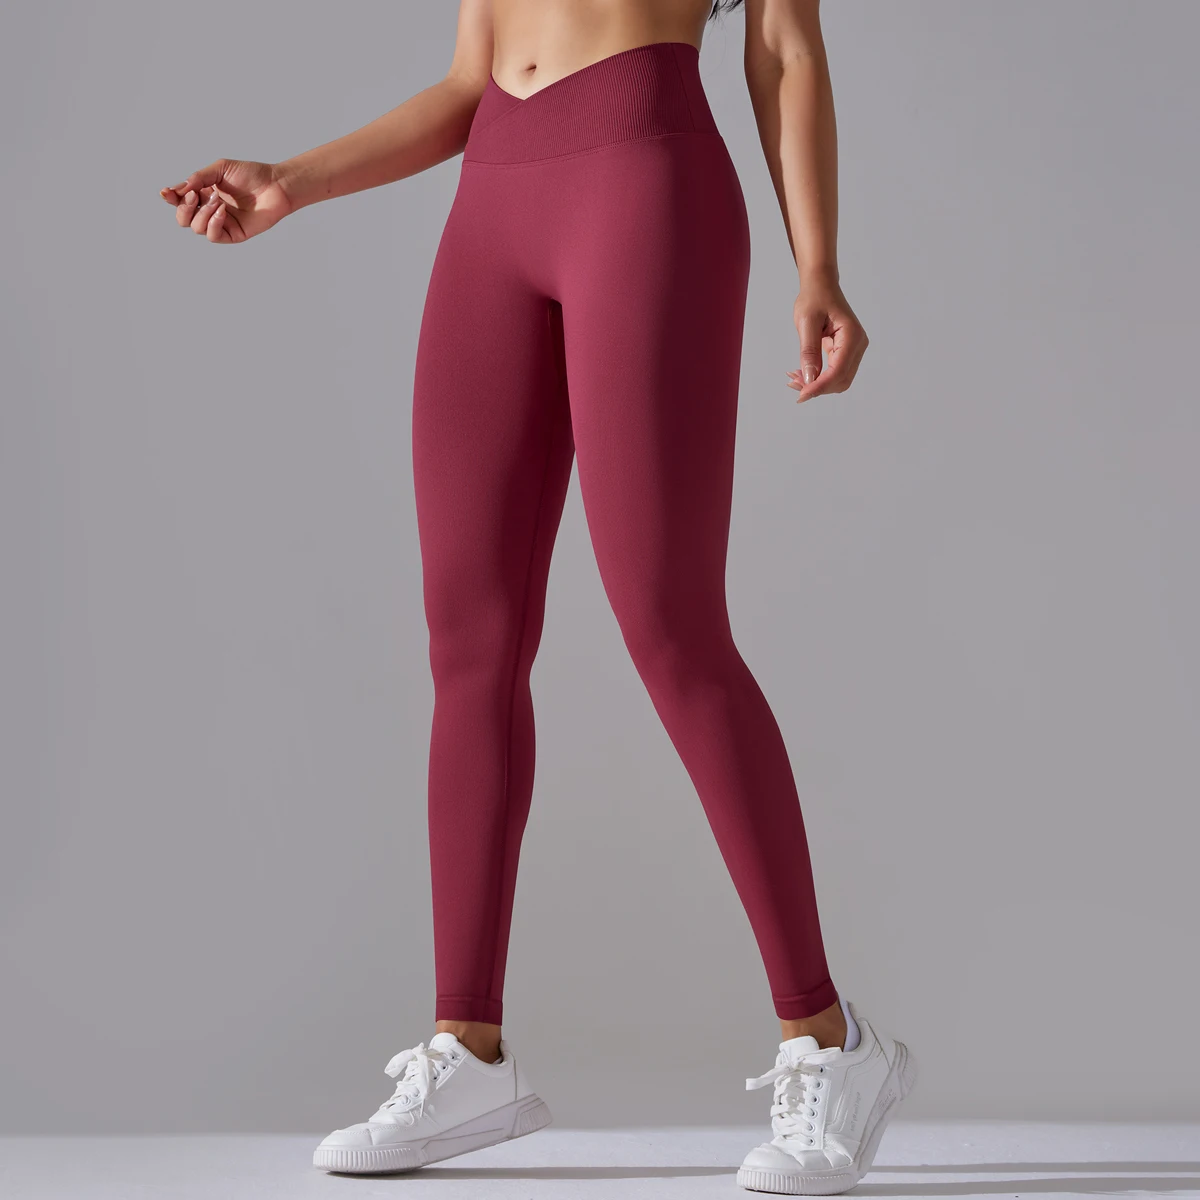 https://ae01.alicdn.com/kf/Saa0f453ce14340318a512d6b071ac058b/Seamless-Yoga-Pant-Cross-Over-Waistband-Sports-Fitness-Legging-Women-High-Waist-Gym-Scrunch-Butt-Running.jpg